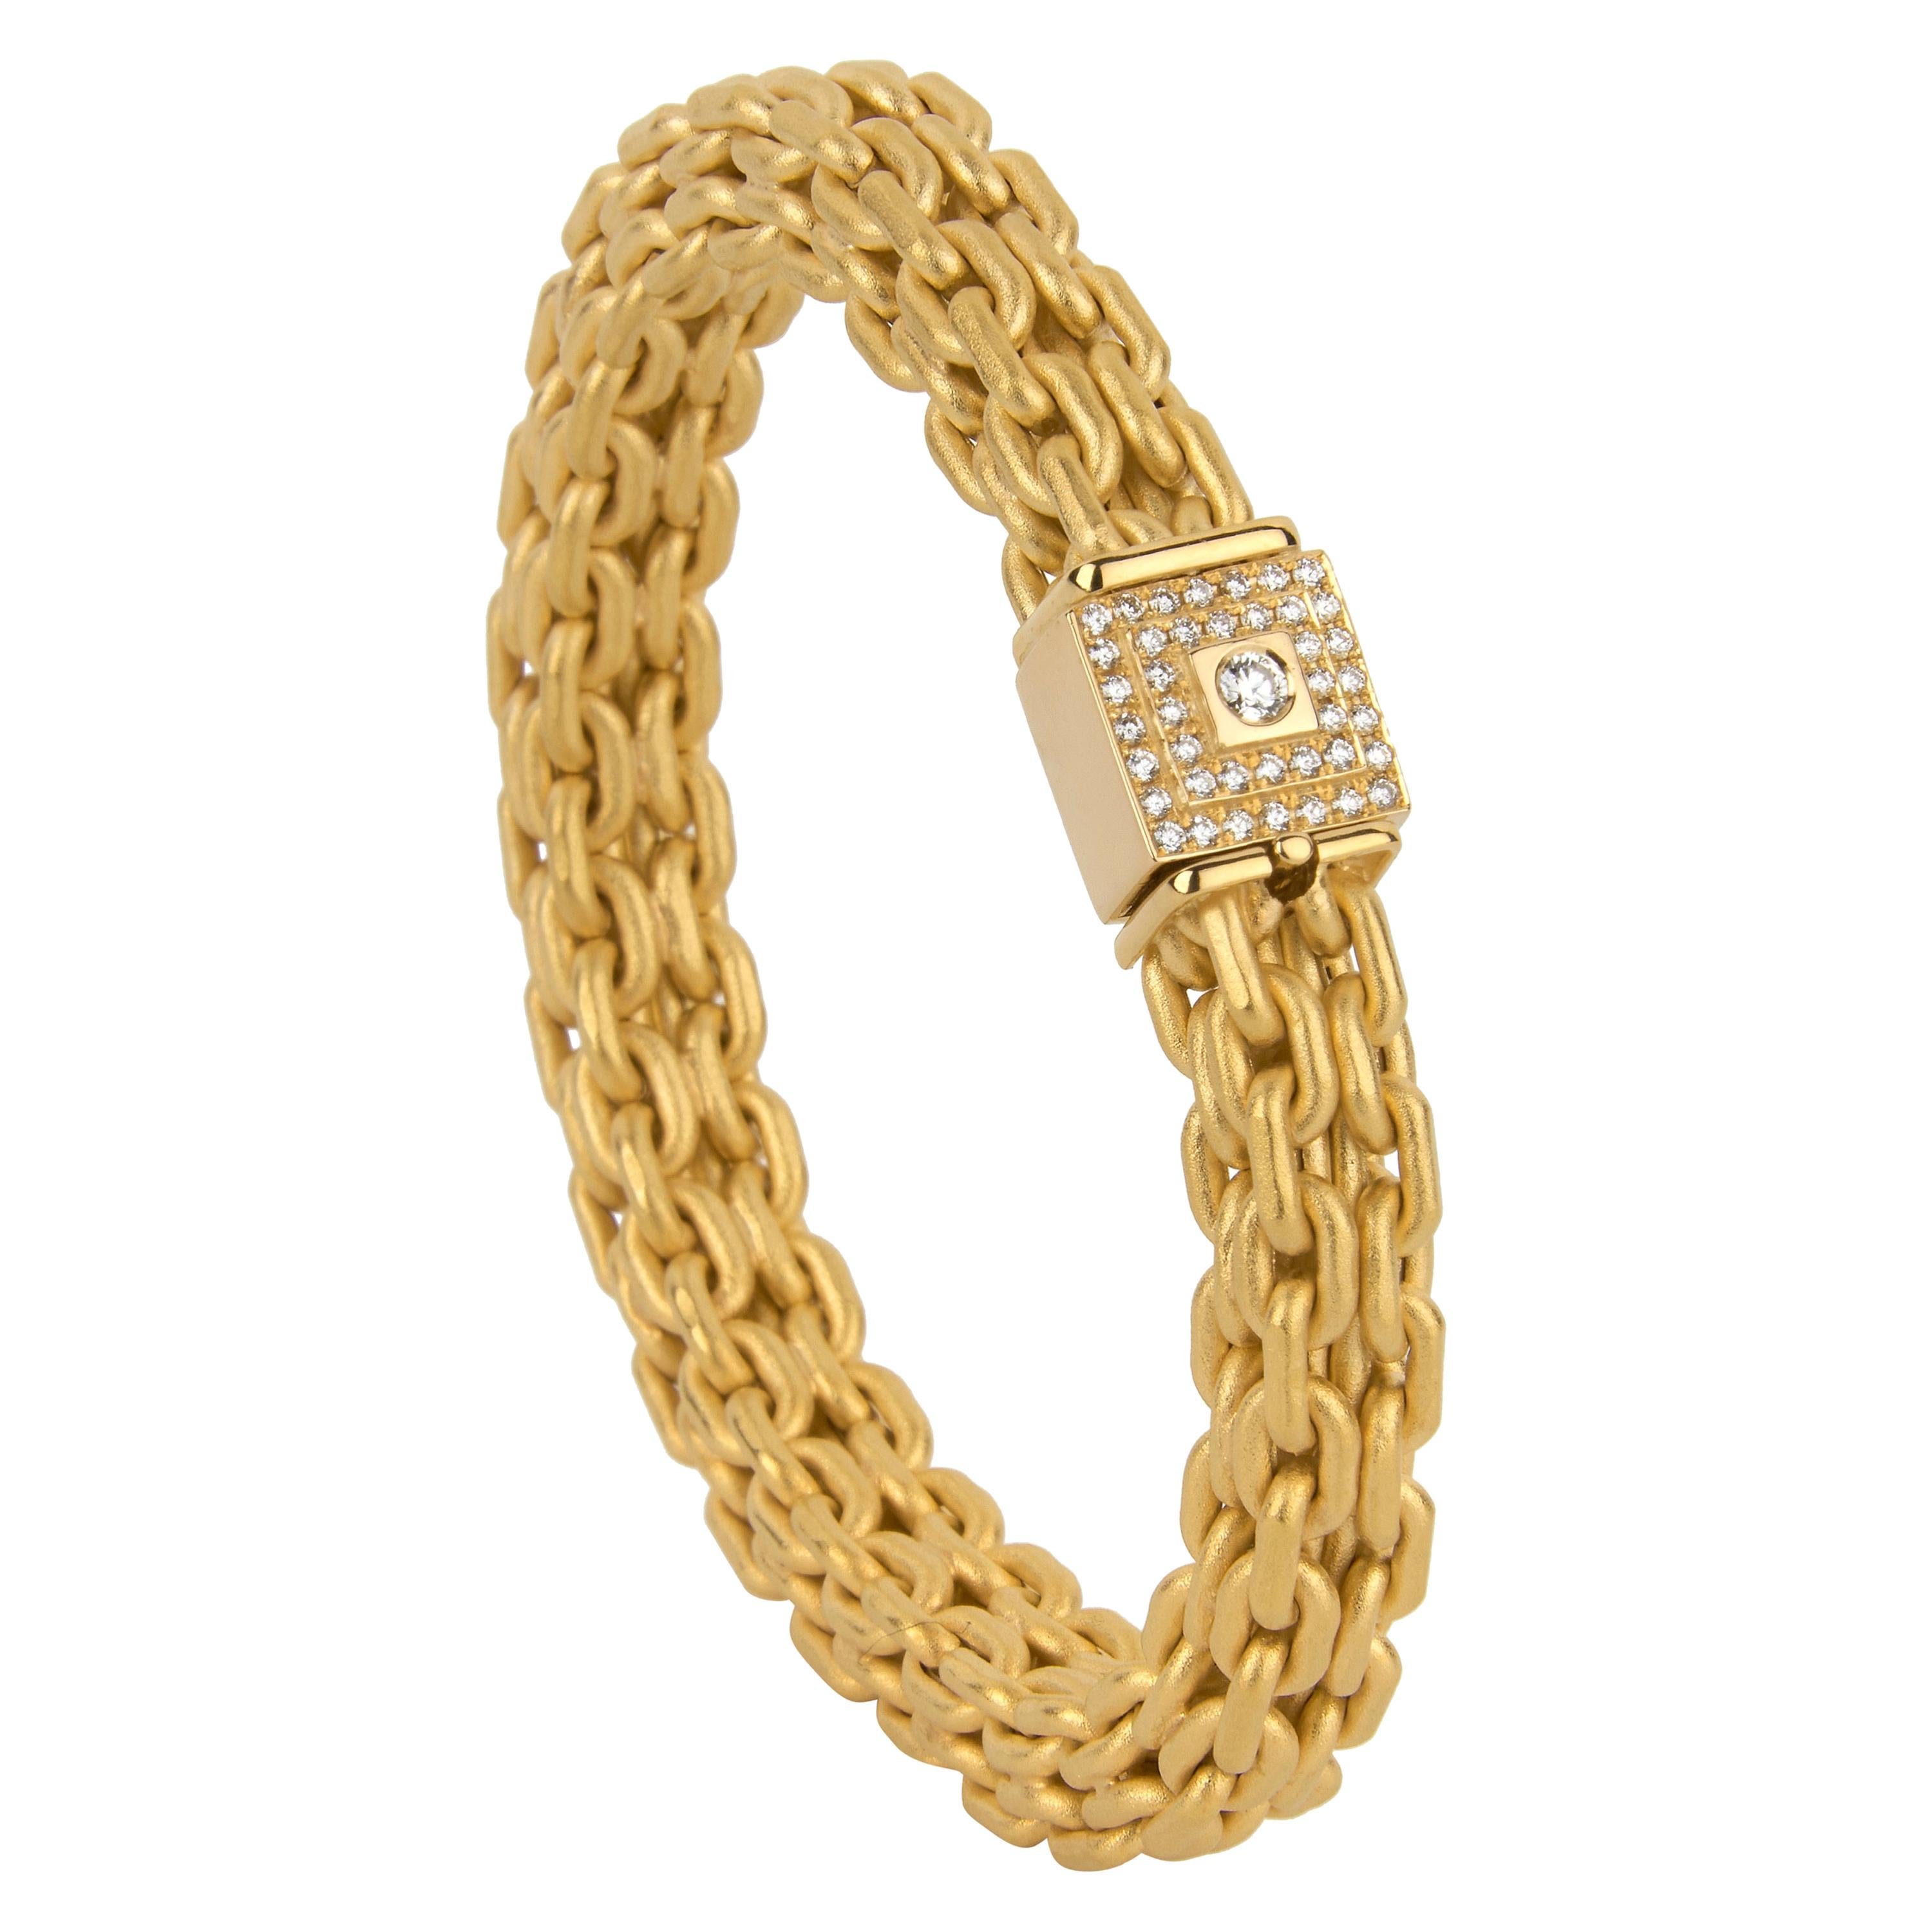 Matthia's & Claire 18 Karat Yellow Gold "Etruscan" Braided Diamond Bracelet